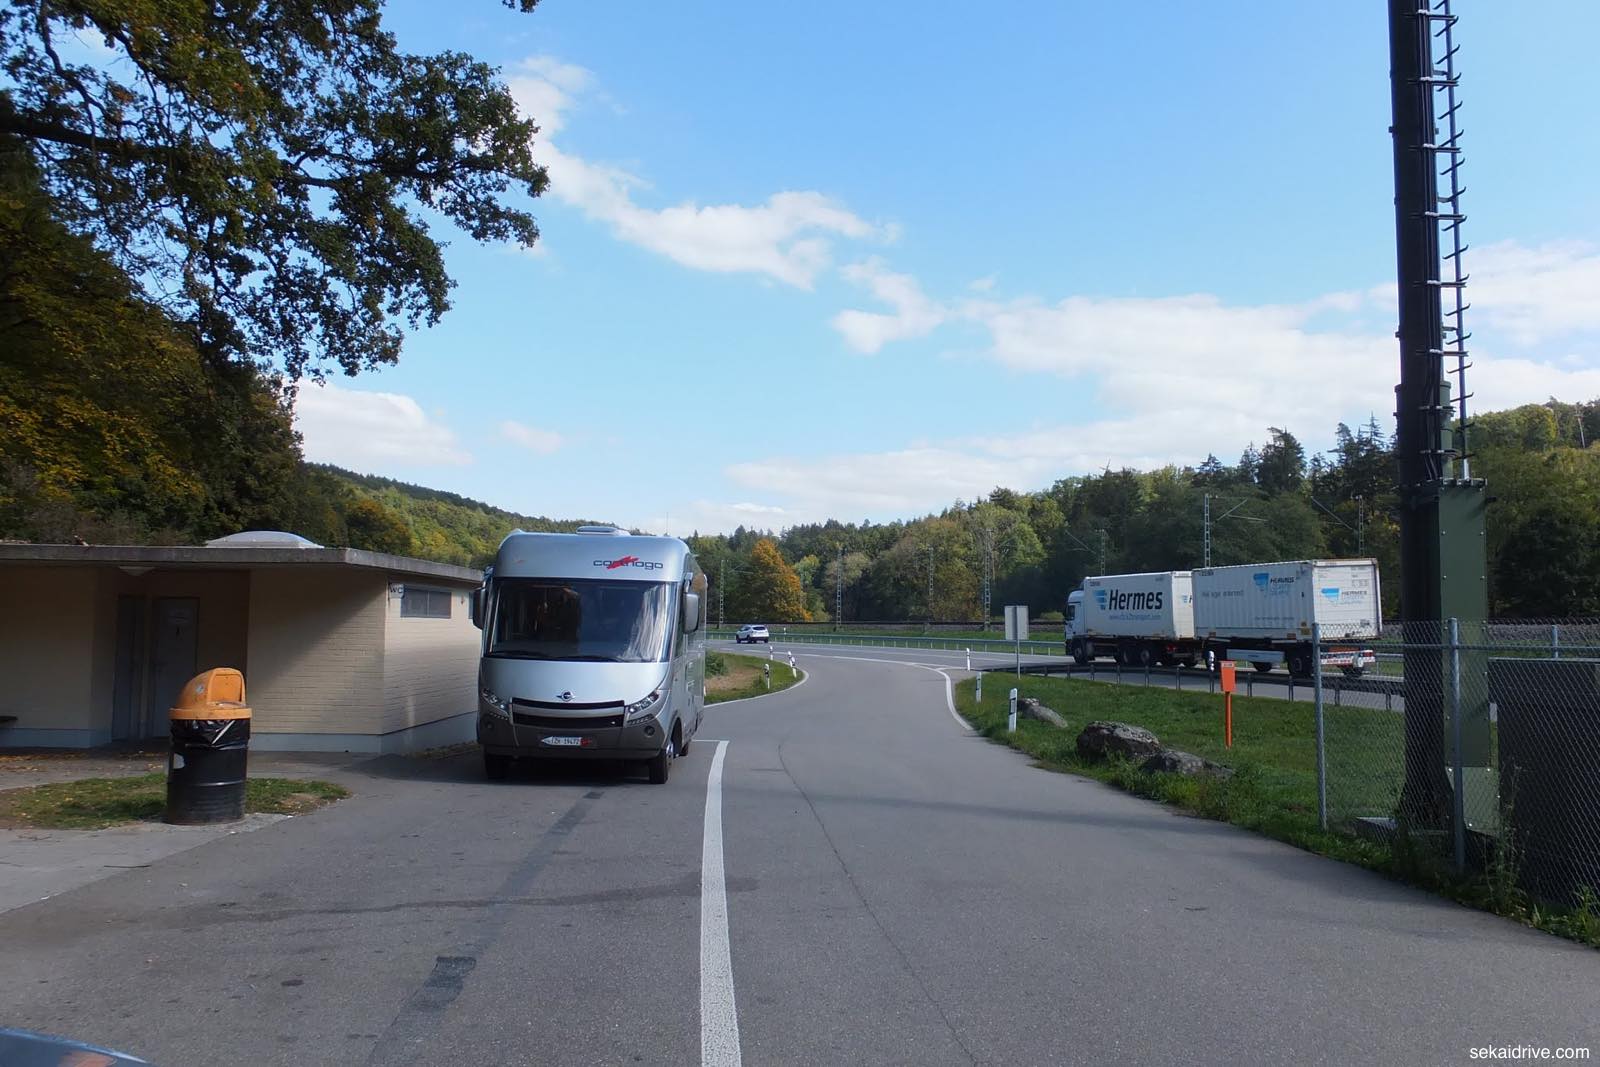 高速道路 スイスの高速道路通行料金はシールを買って支払う ヴィニエットの購入方法 スイス Sekai Drive